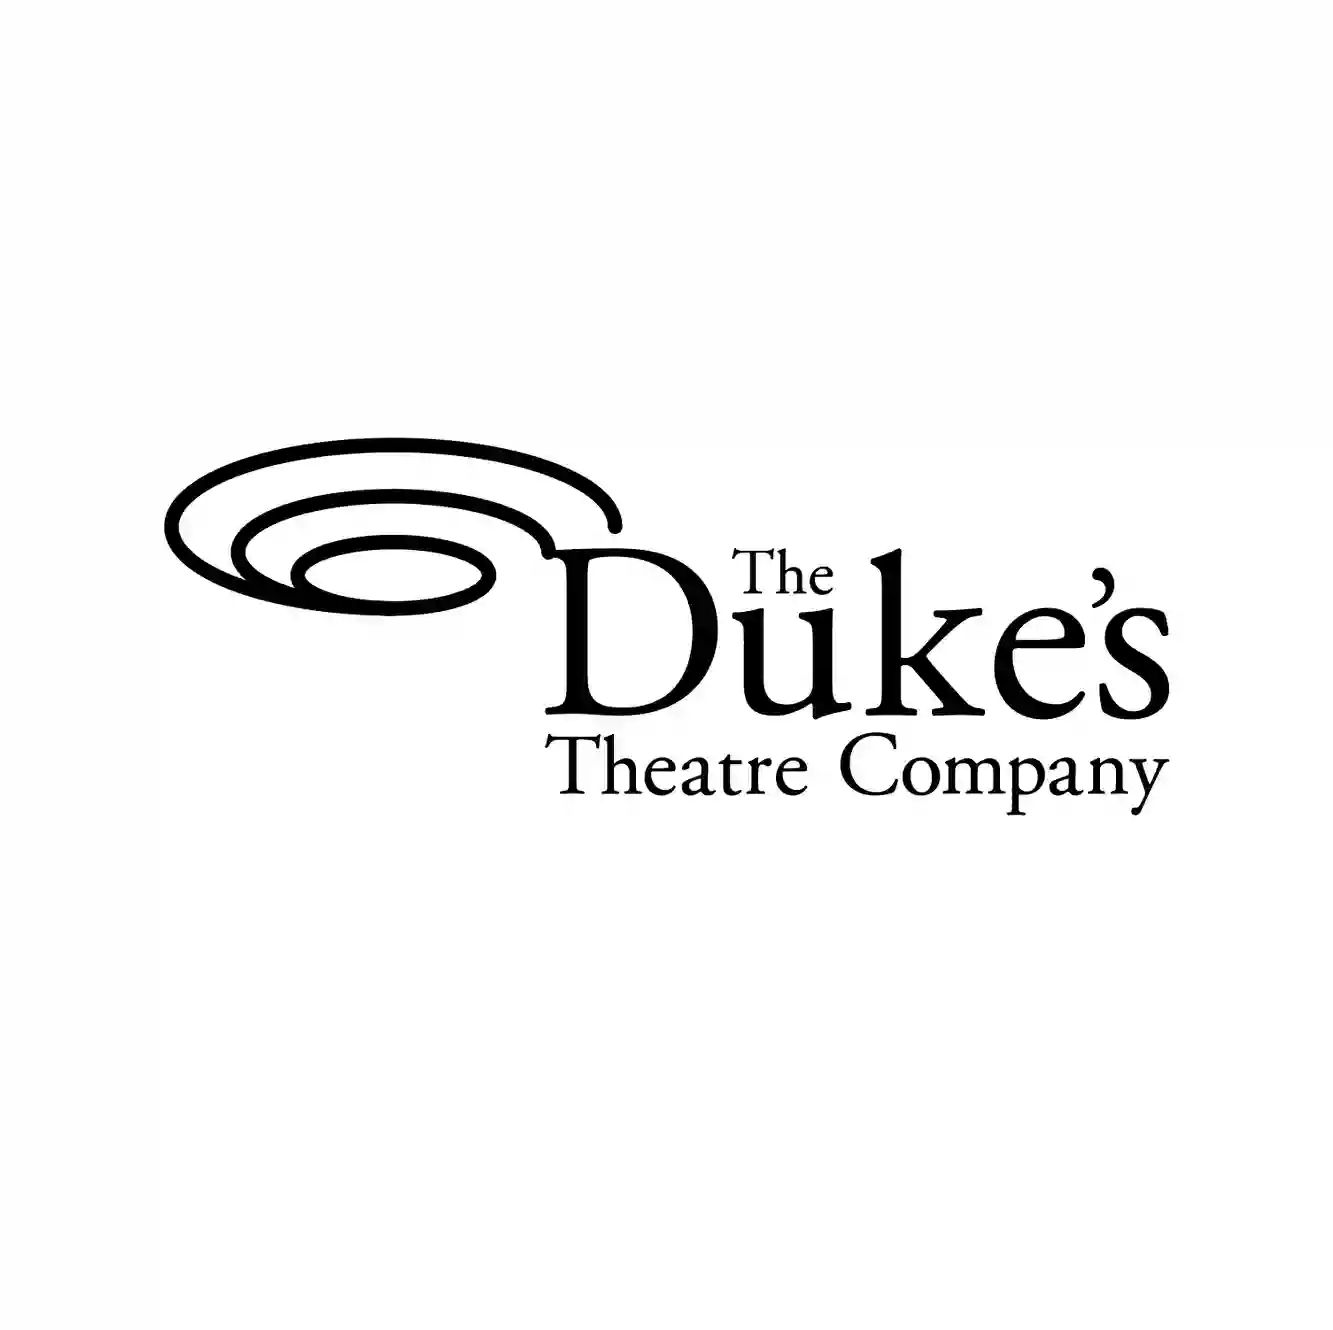 The Duke's Theatre Company